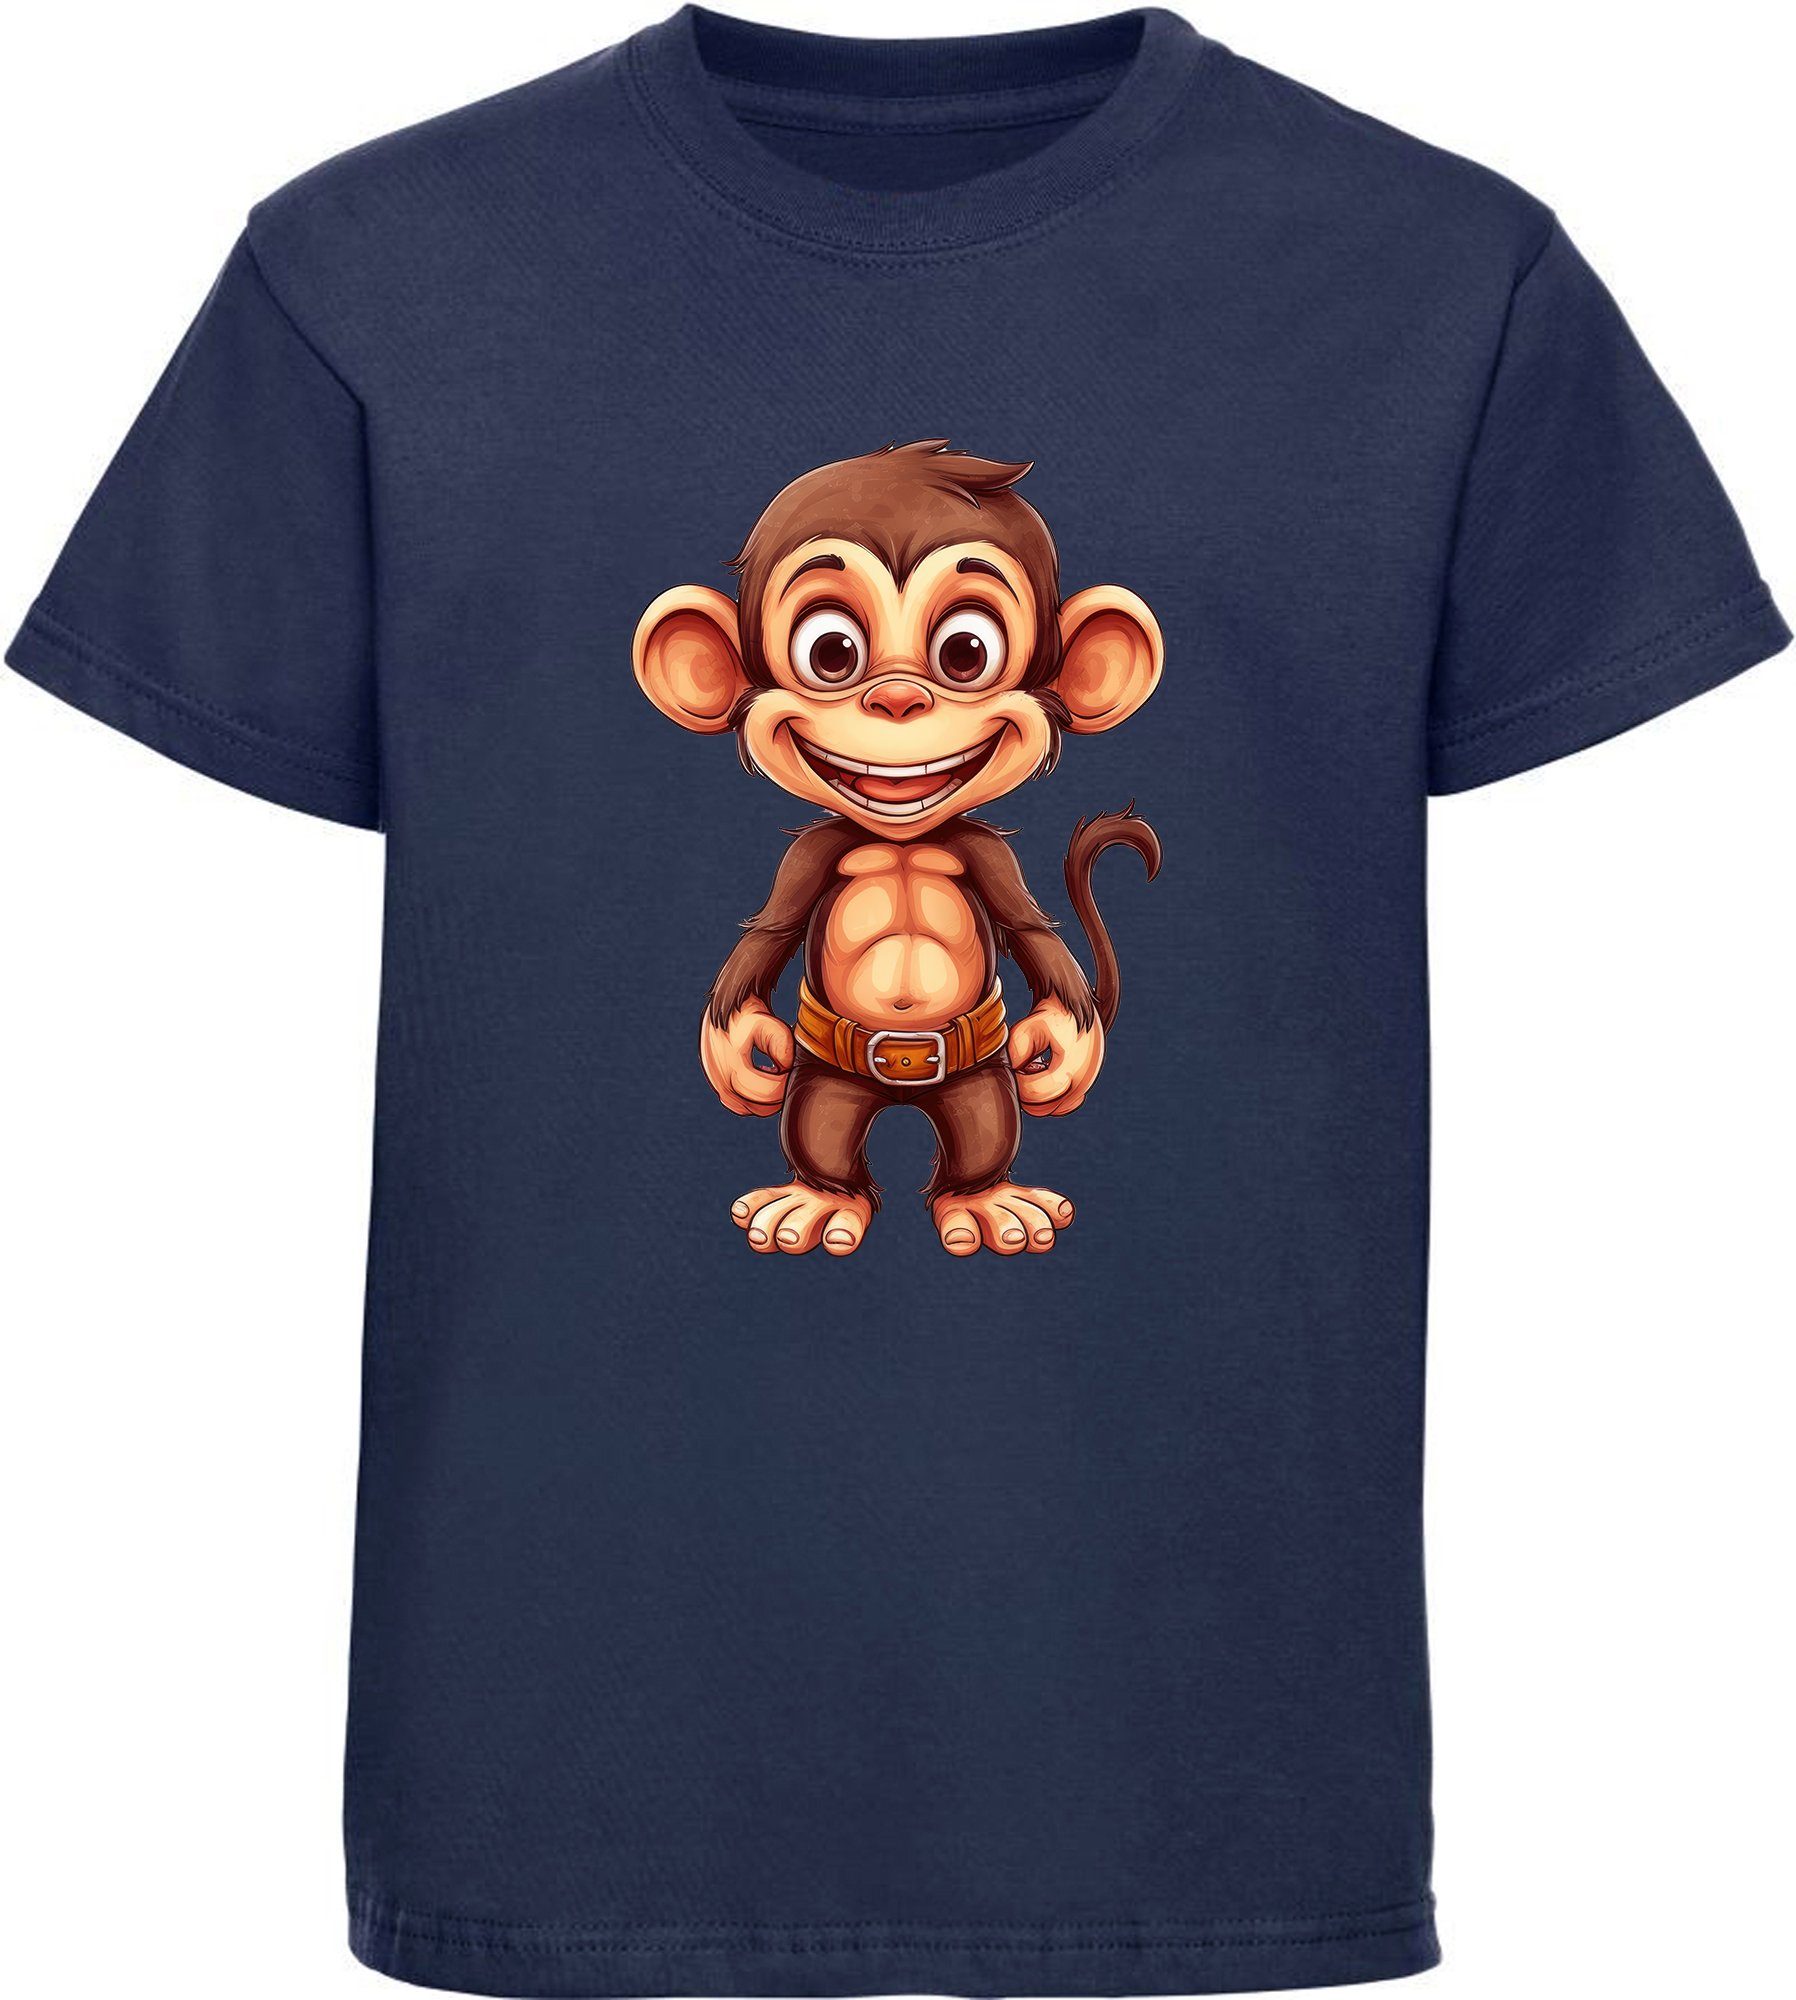 MyDesign24 T-Shirt Kinder Wildtier - Aufdruck, mit Baby Affe Print Shirt navy Baumwollshirt Schimpanse i276 bedruckt blau